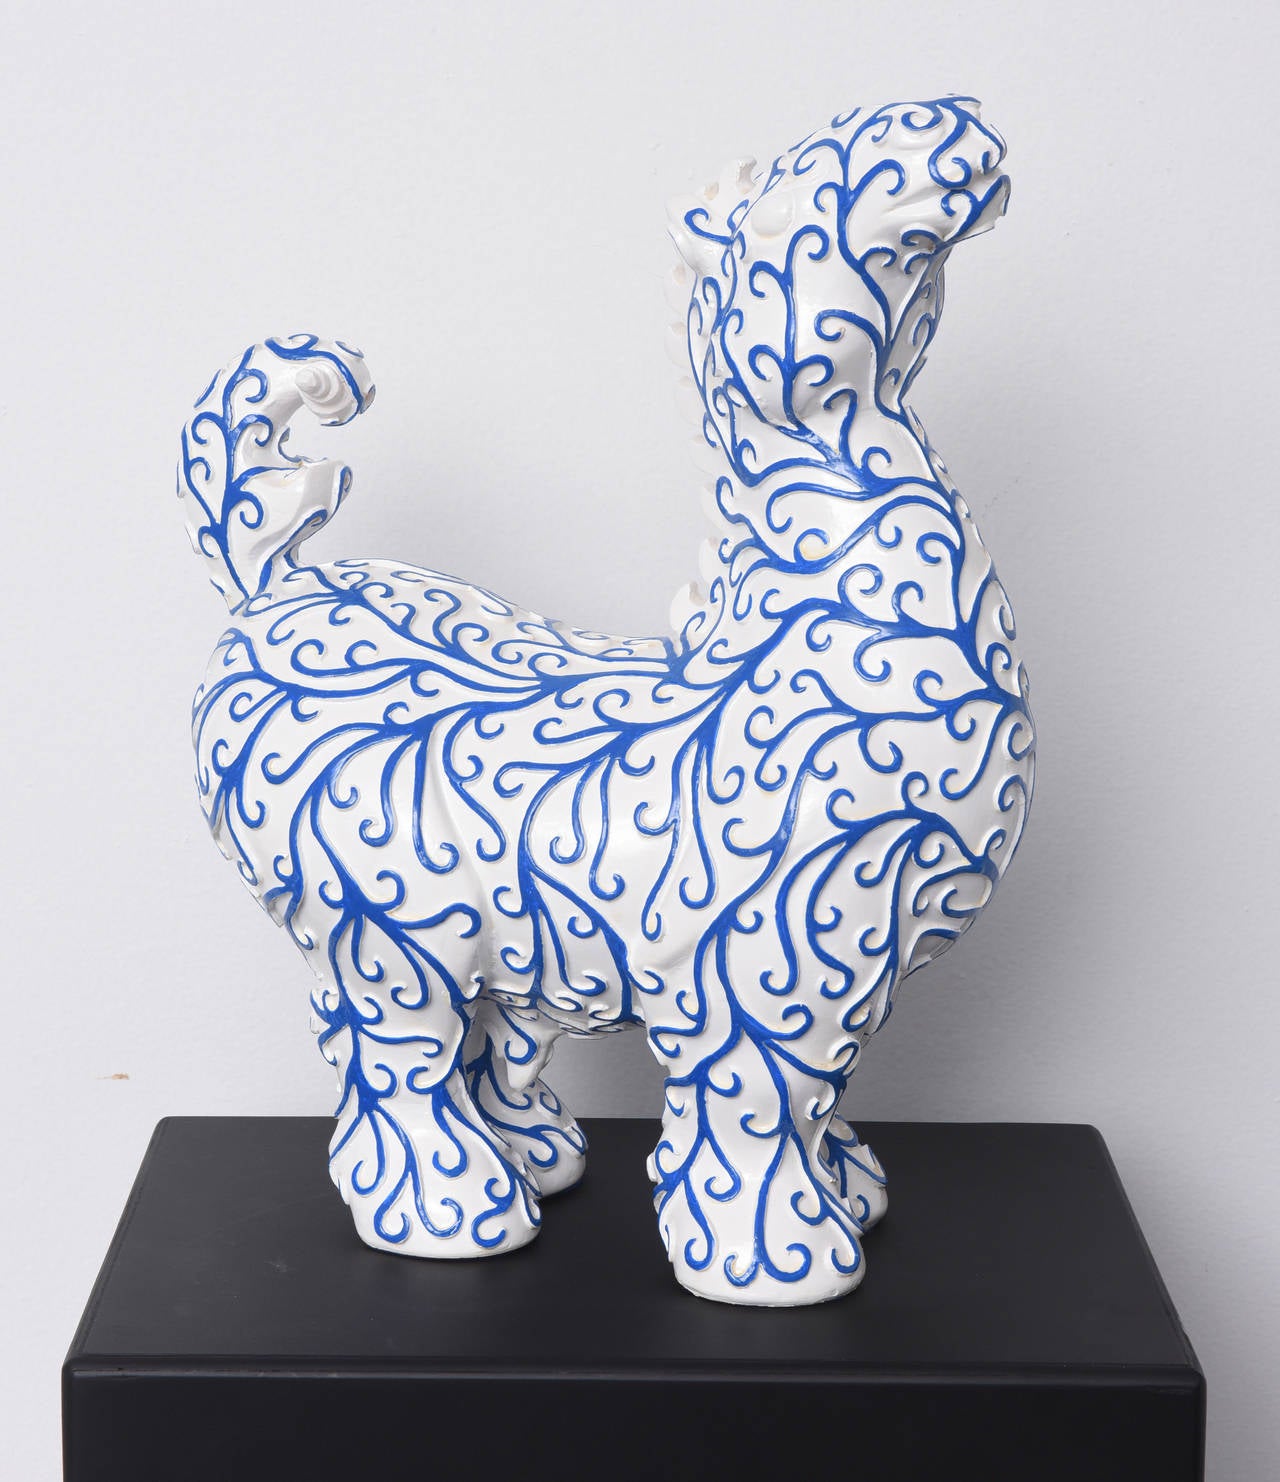 Arabesques Horse ist eine Harzskulptur von Patrick Schumacher, einem zeitgenössischen französischen Künstler. Diese weiße Pferdeskulptur mit blauen 